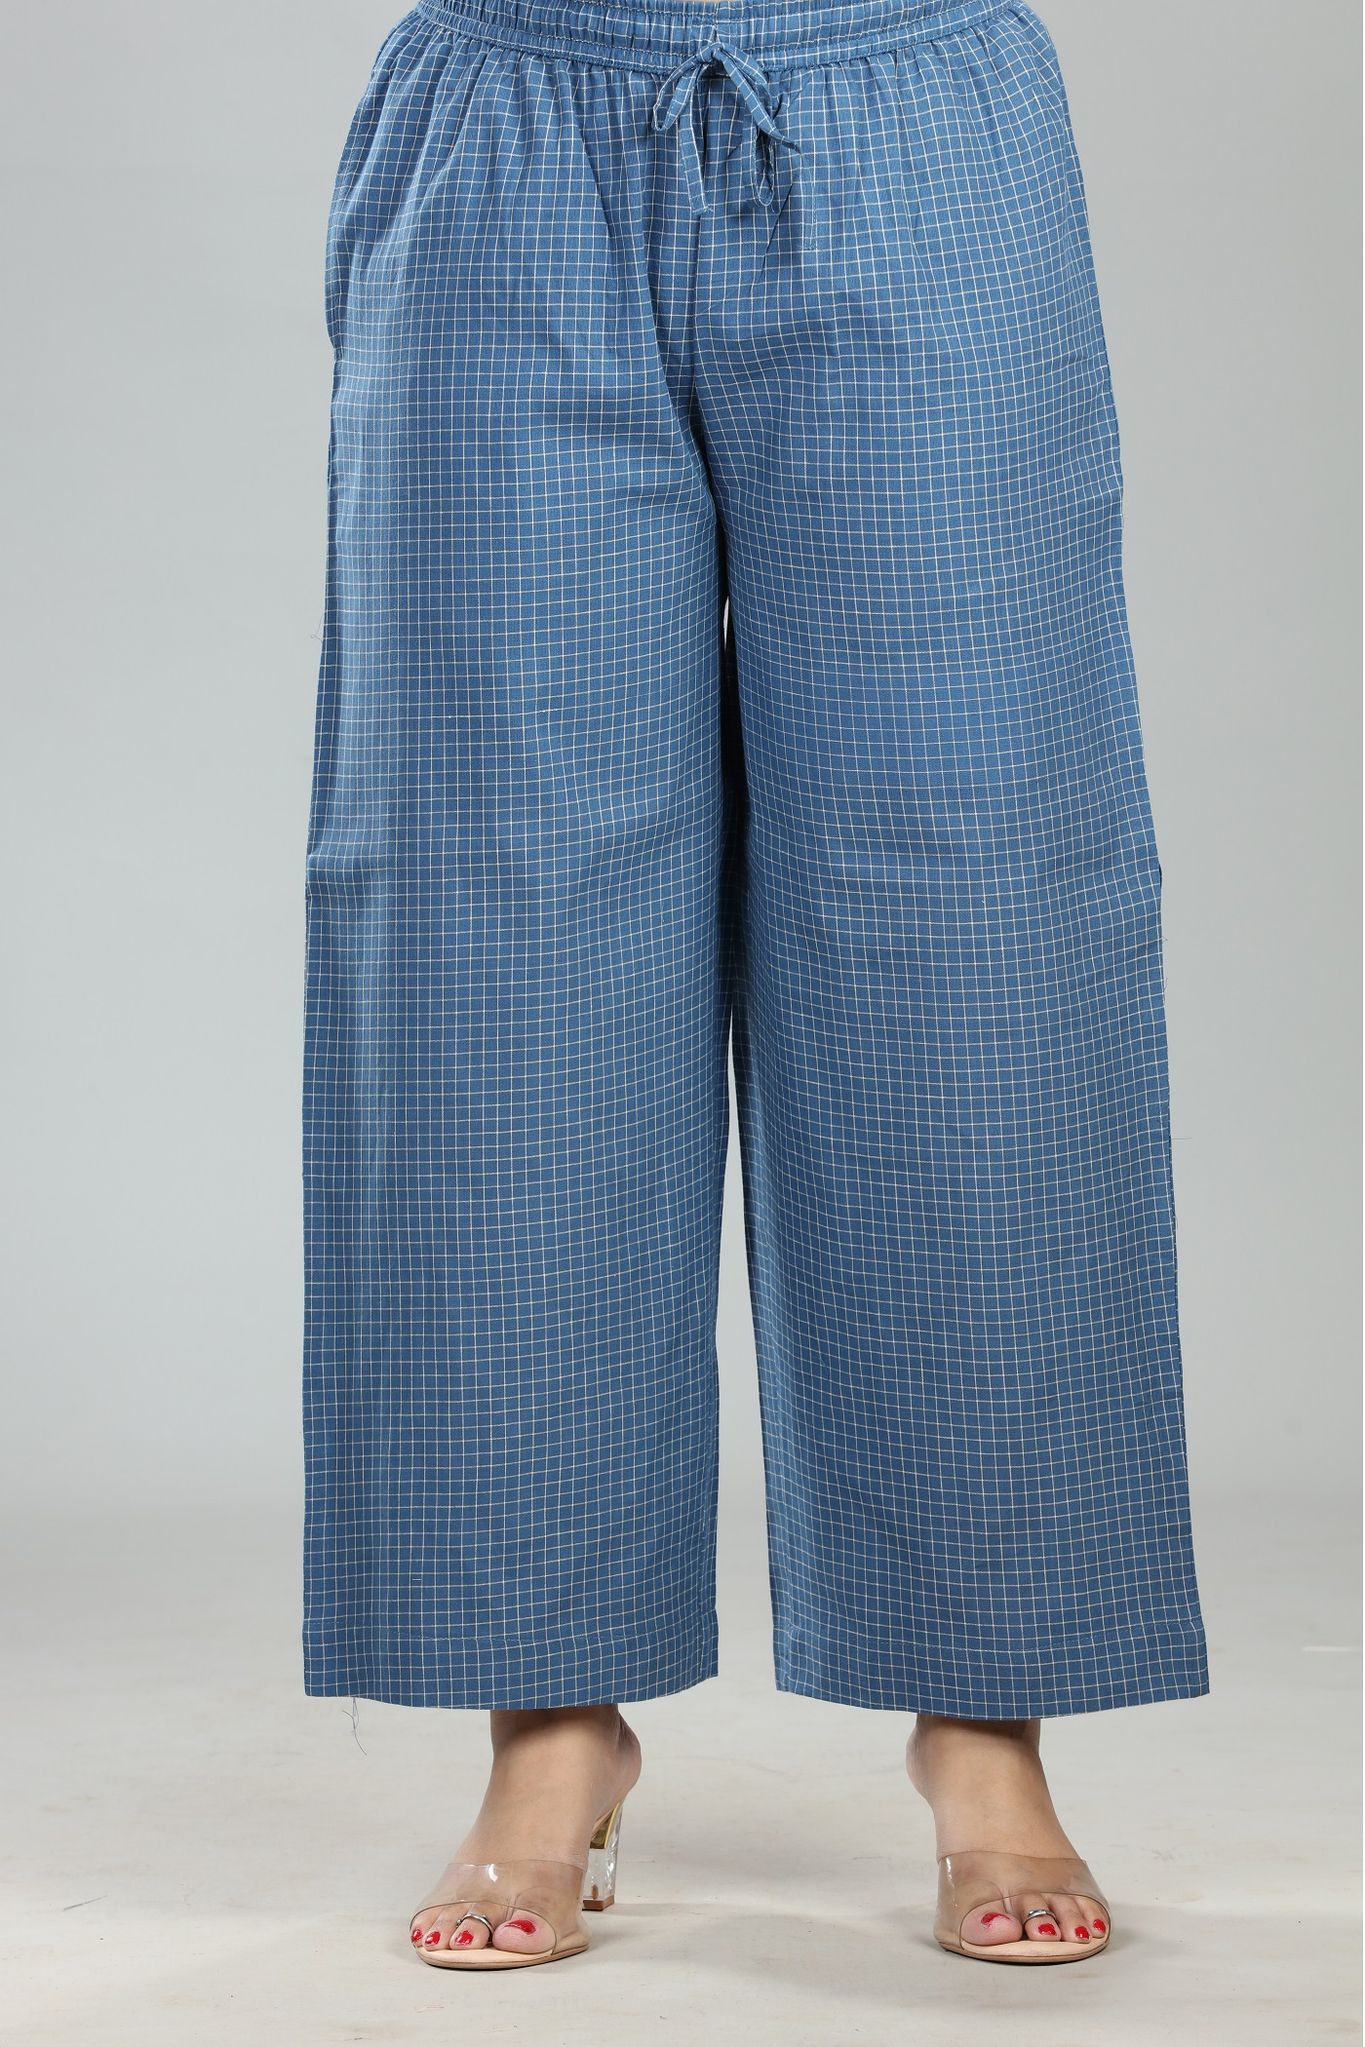 Madhu Navy Blue Cotton Pant